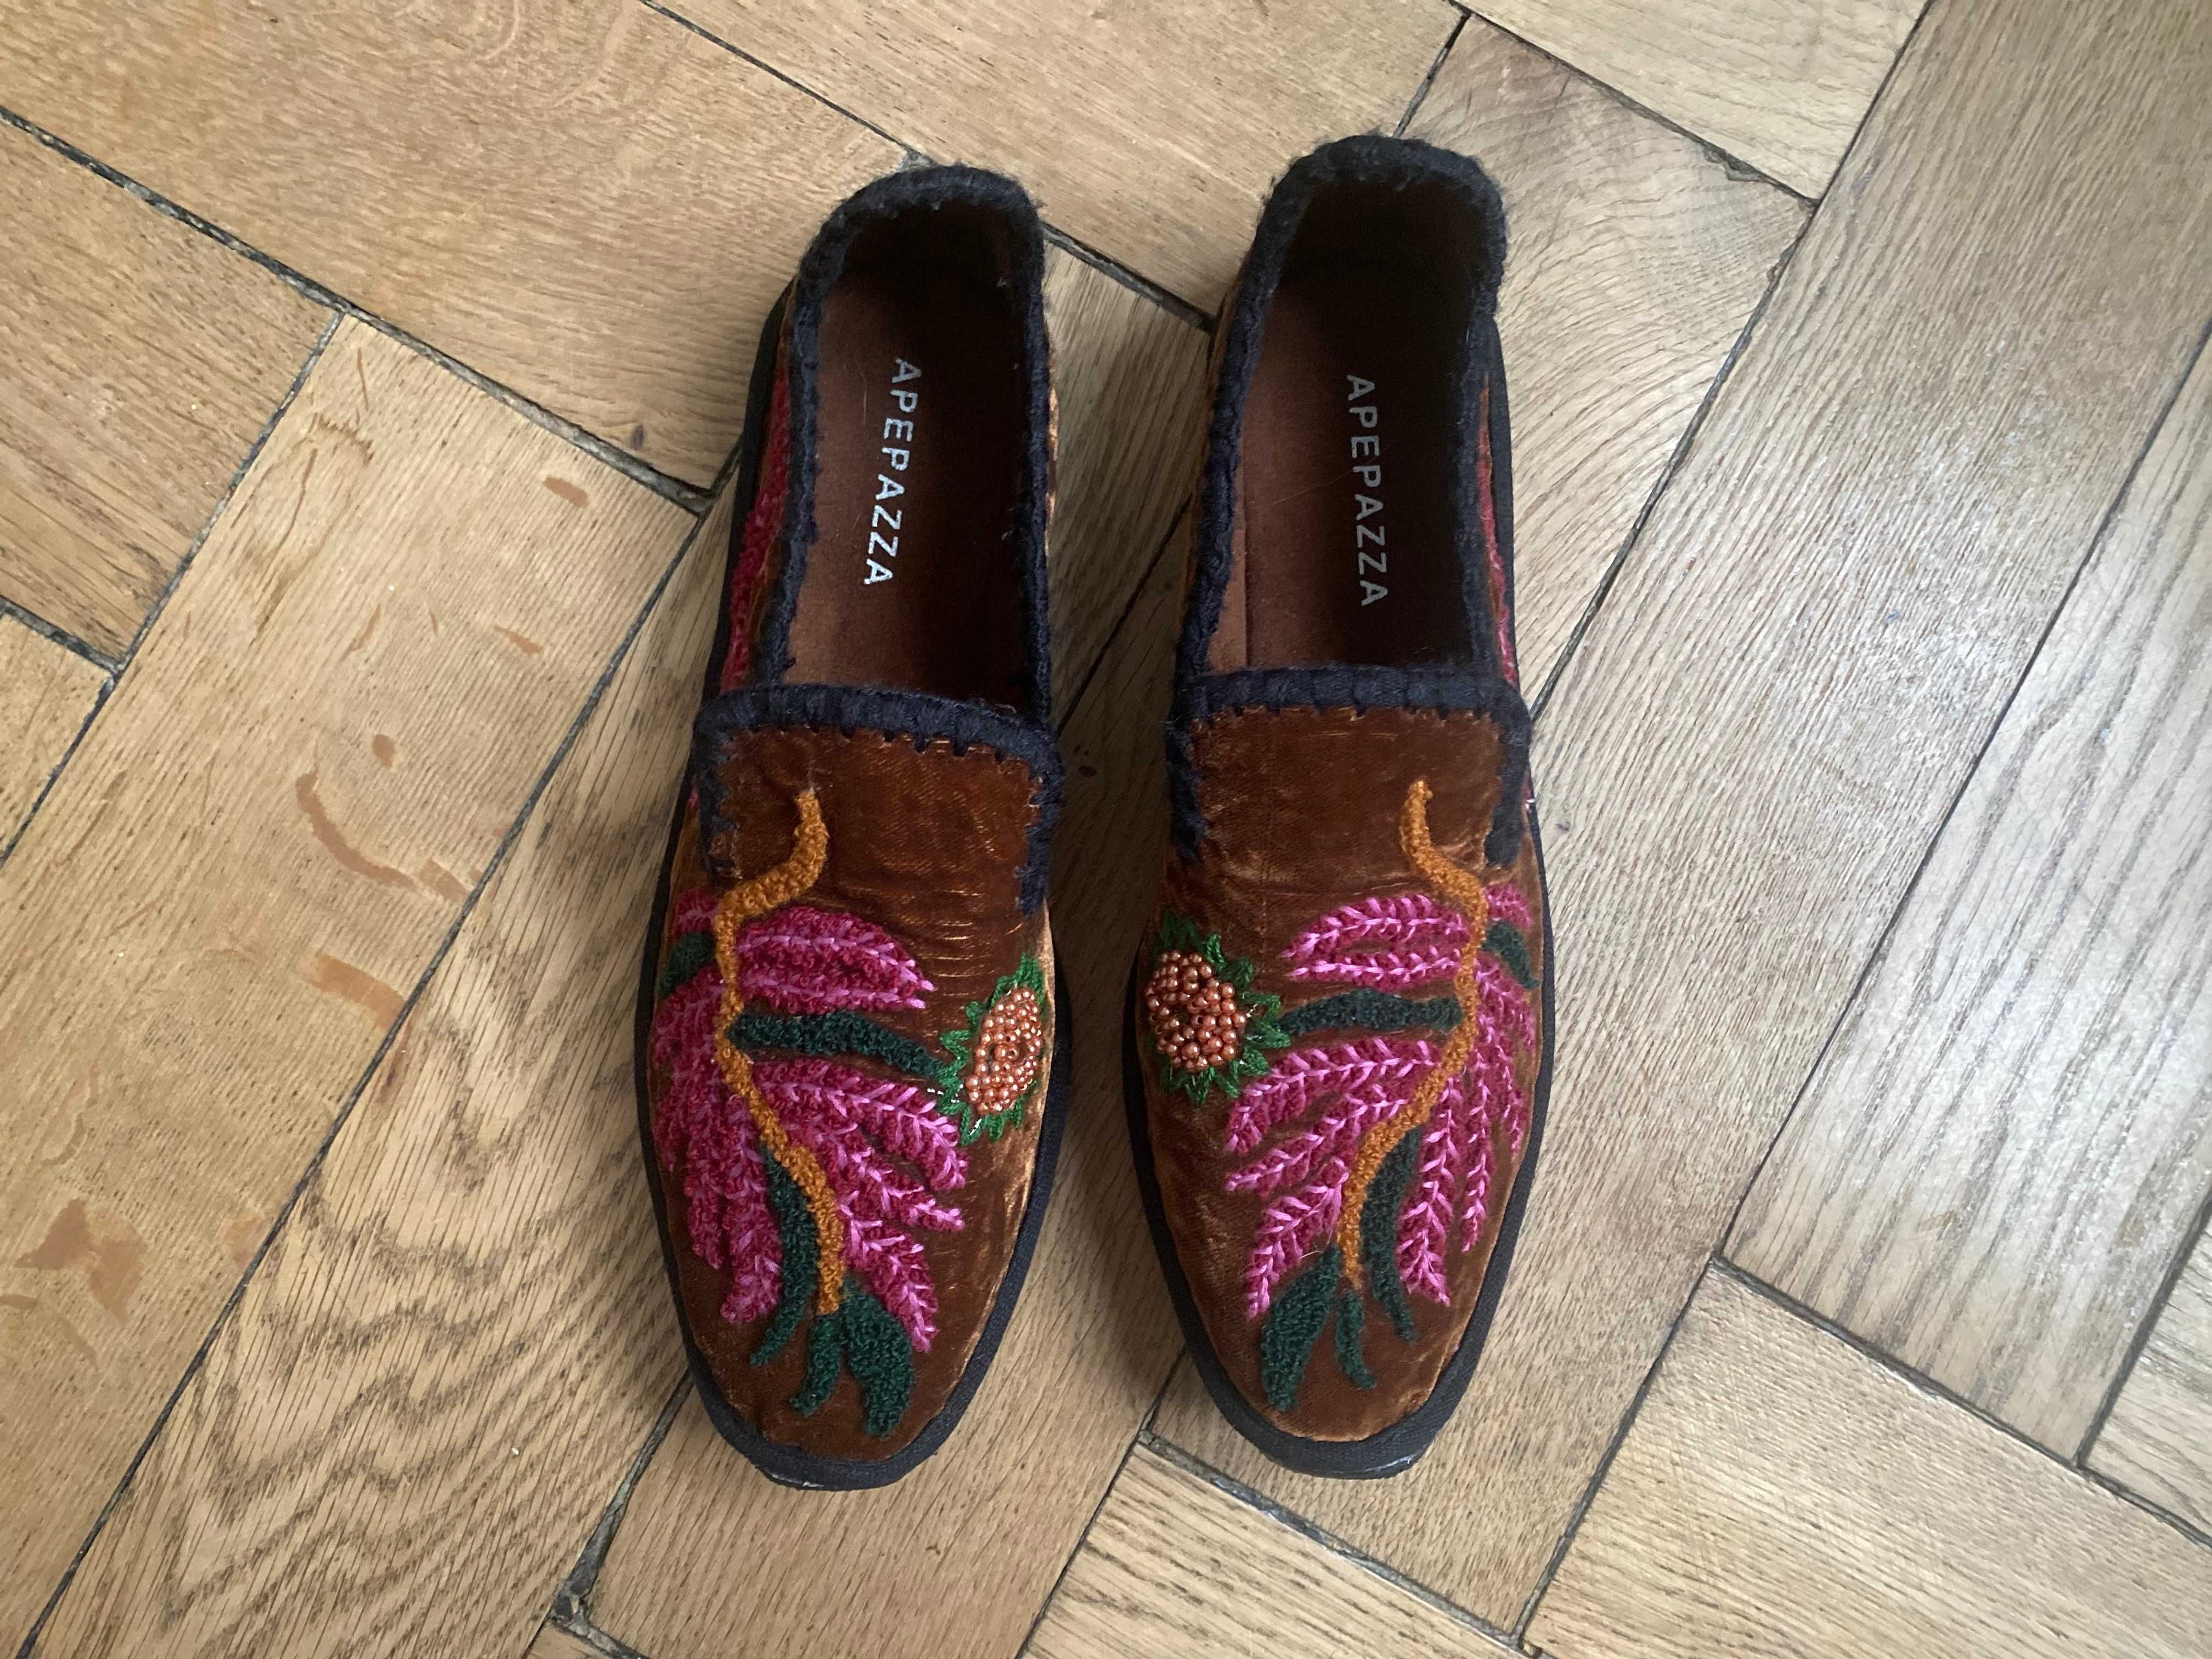 piękne haftowane buty włoskiej marki APEPAZZA rozm. 37, wkładka 24 cm